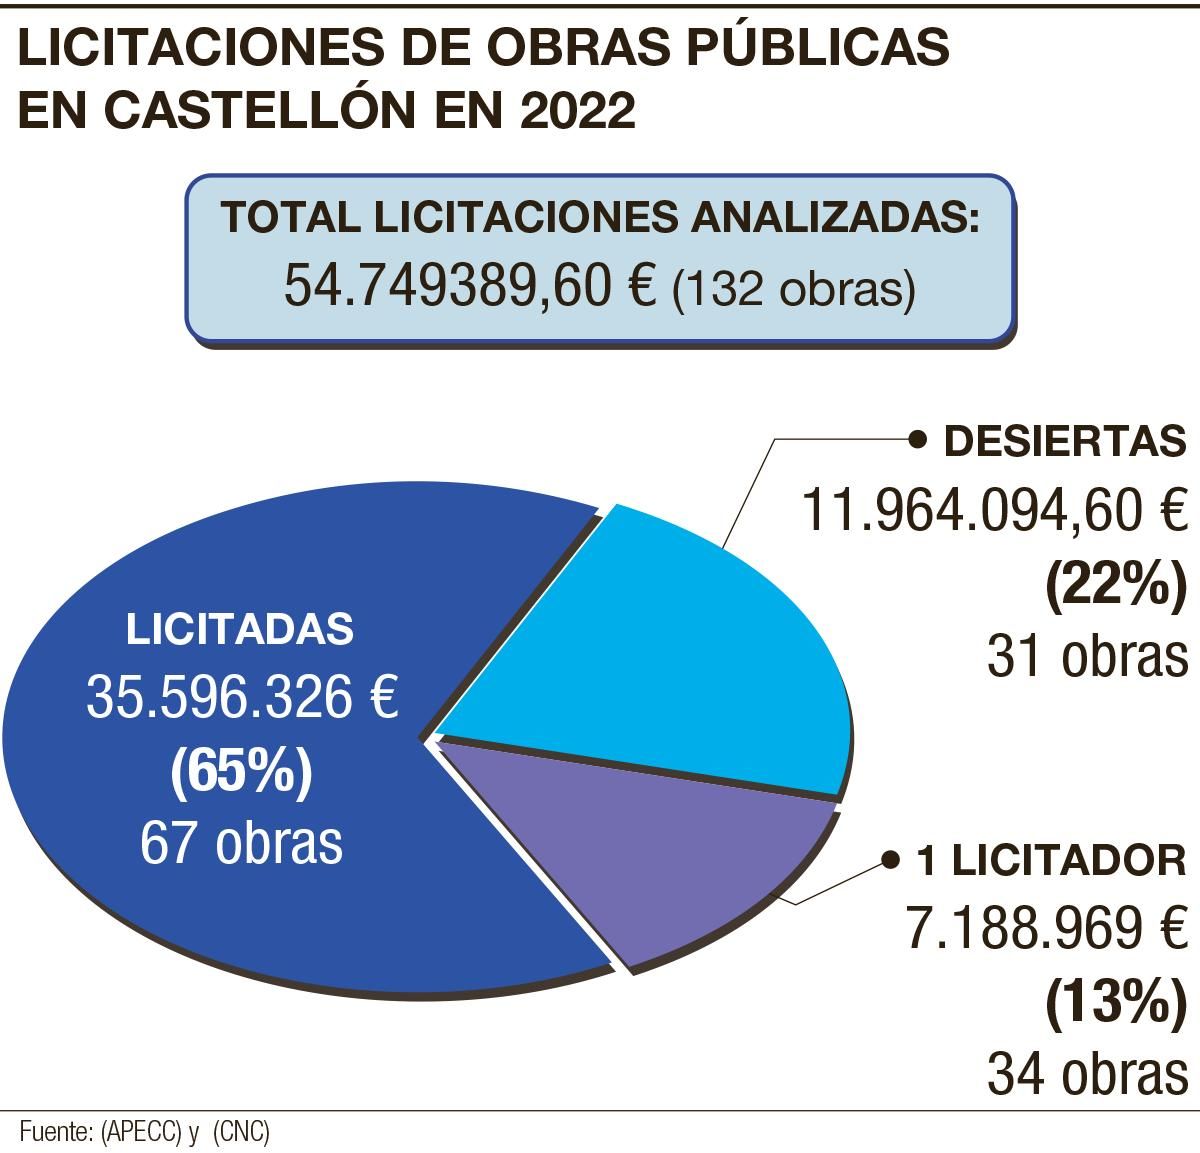 Licitaciones de obras públicas en Castellón